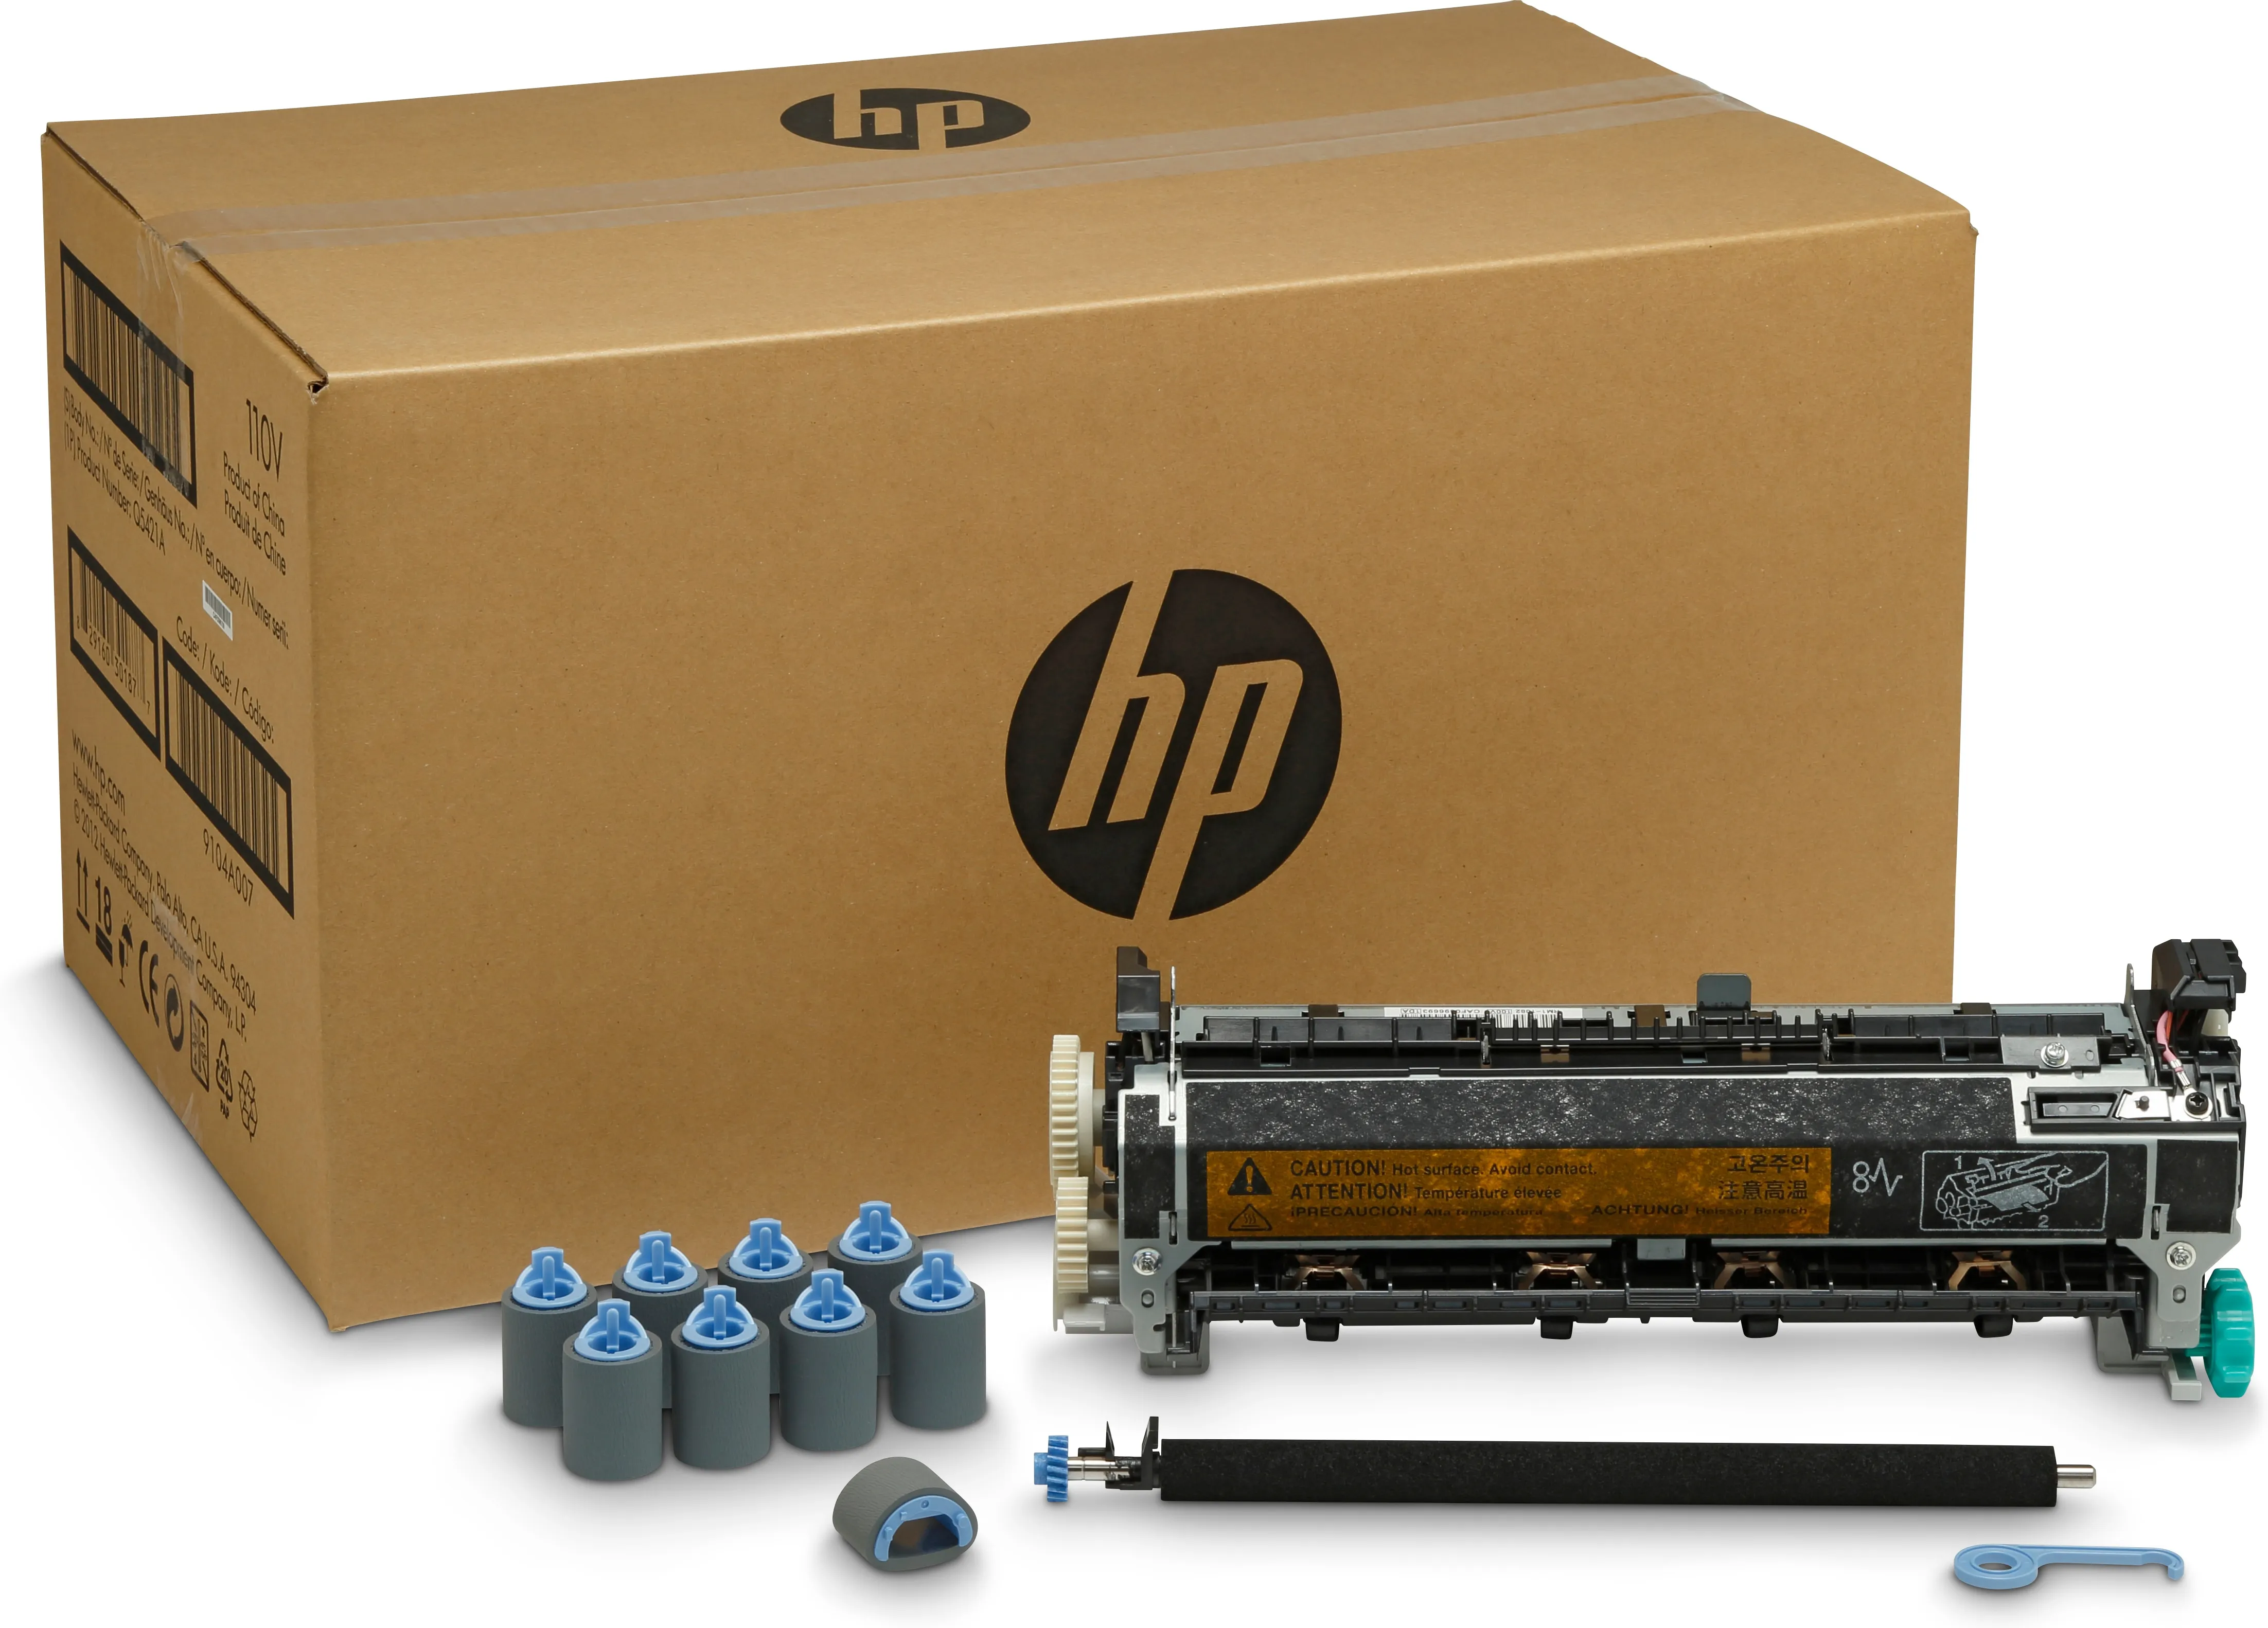 Vente Kit de maintenance utilisateur HP LaserJet 220 V HP au meilleur prix - visuel 4